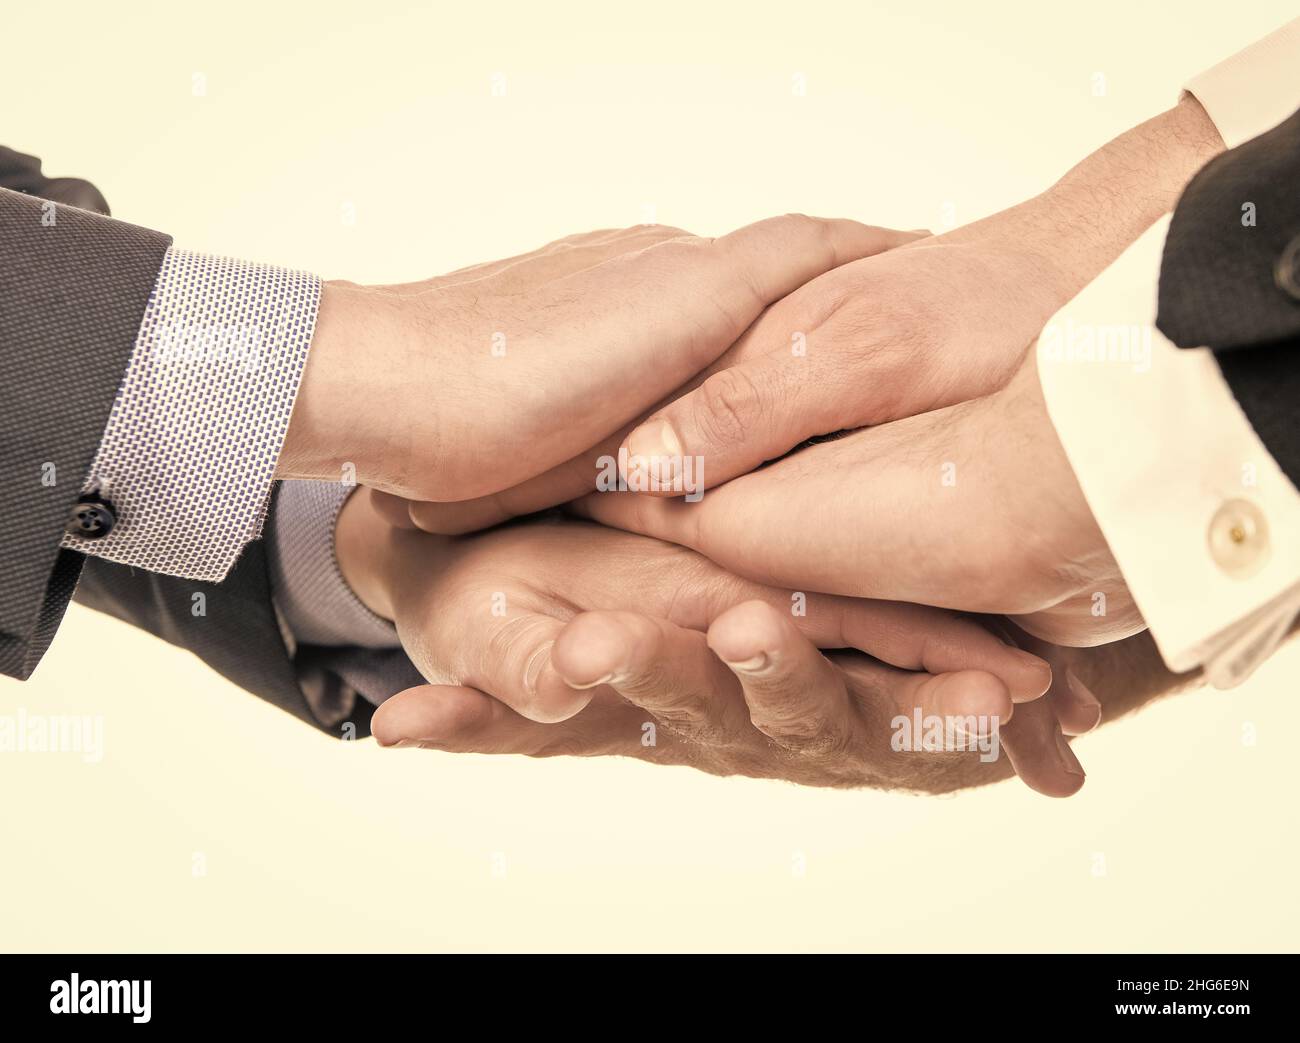 uomini che tengono le mani aiutanti che esprimono sostegno, fiducia Foto Stock